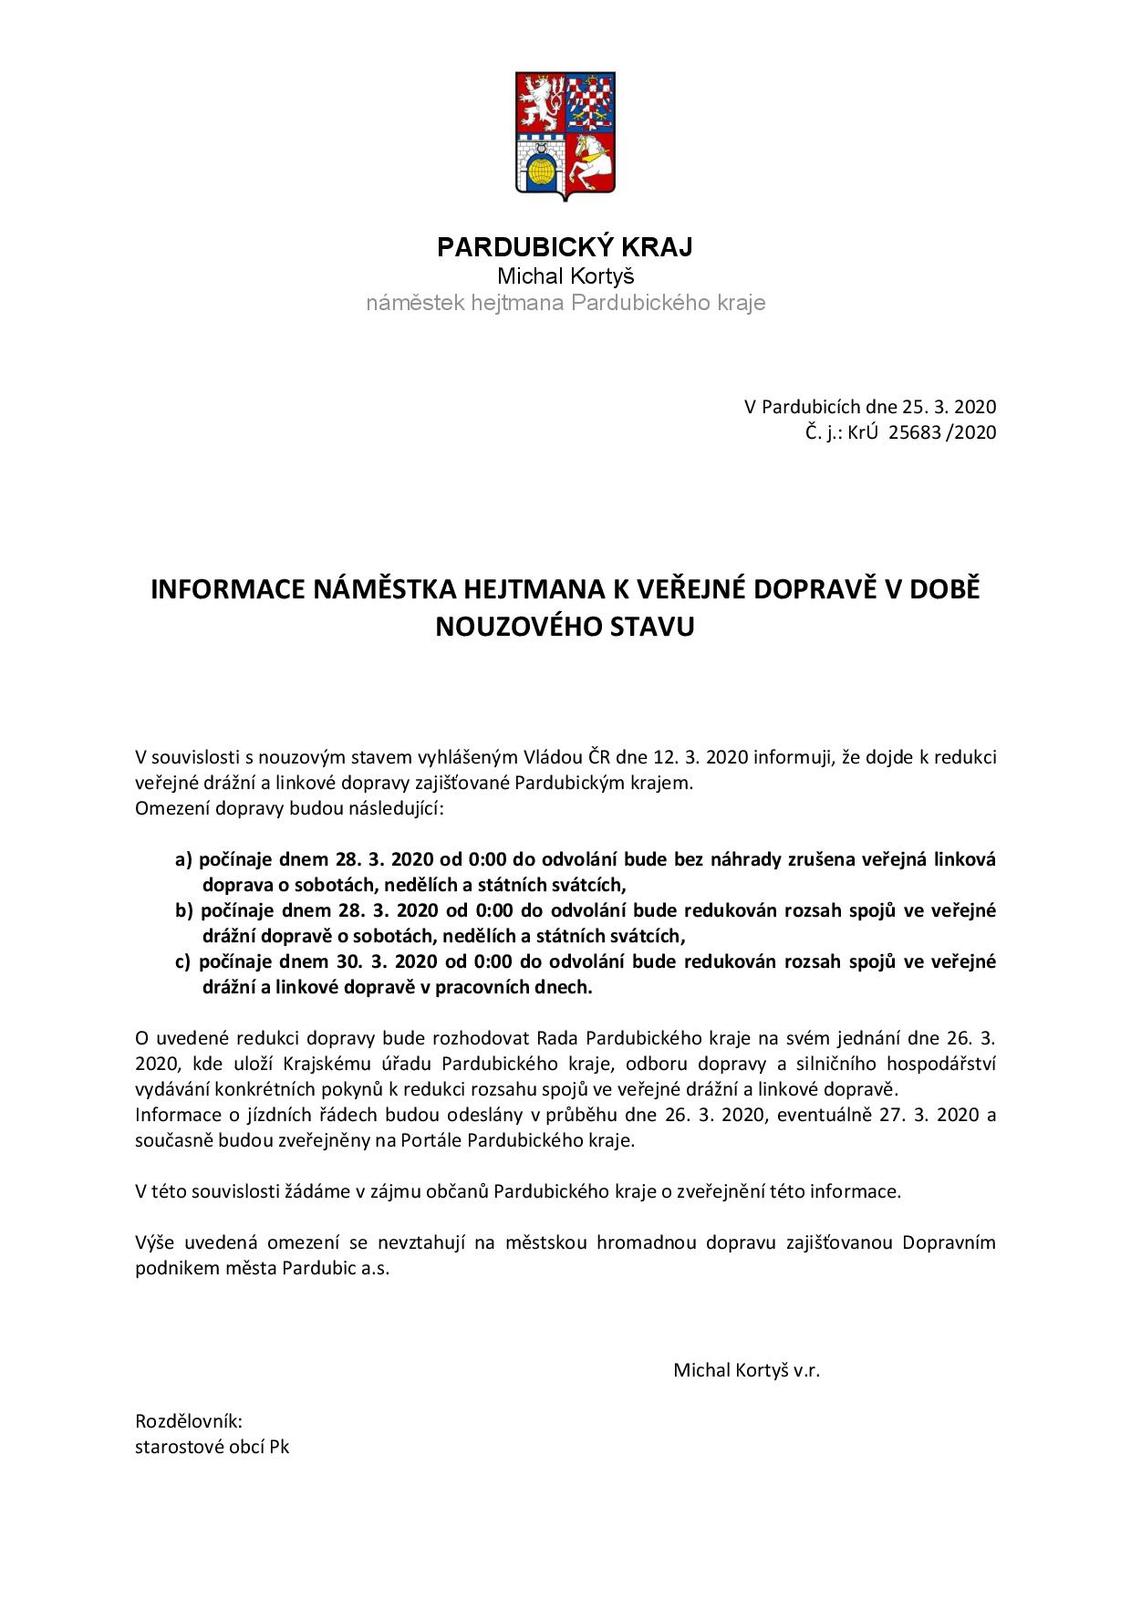 Informace_namestka_hejtmana_omezení_dopravy (pdf-page-001.jpg